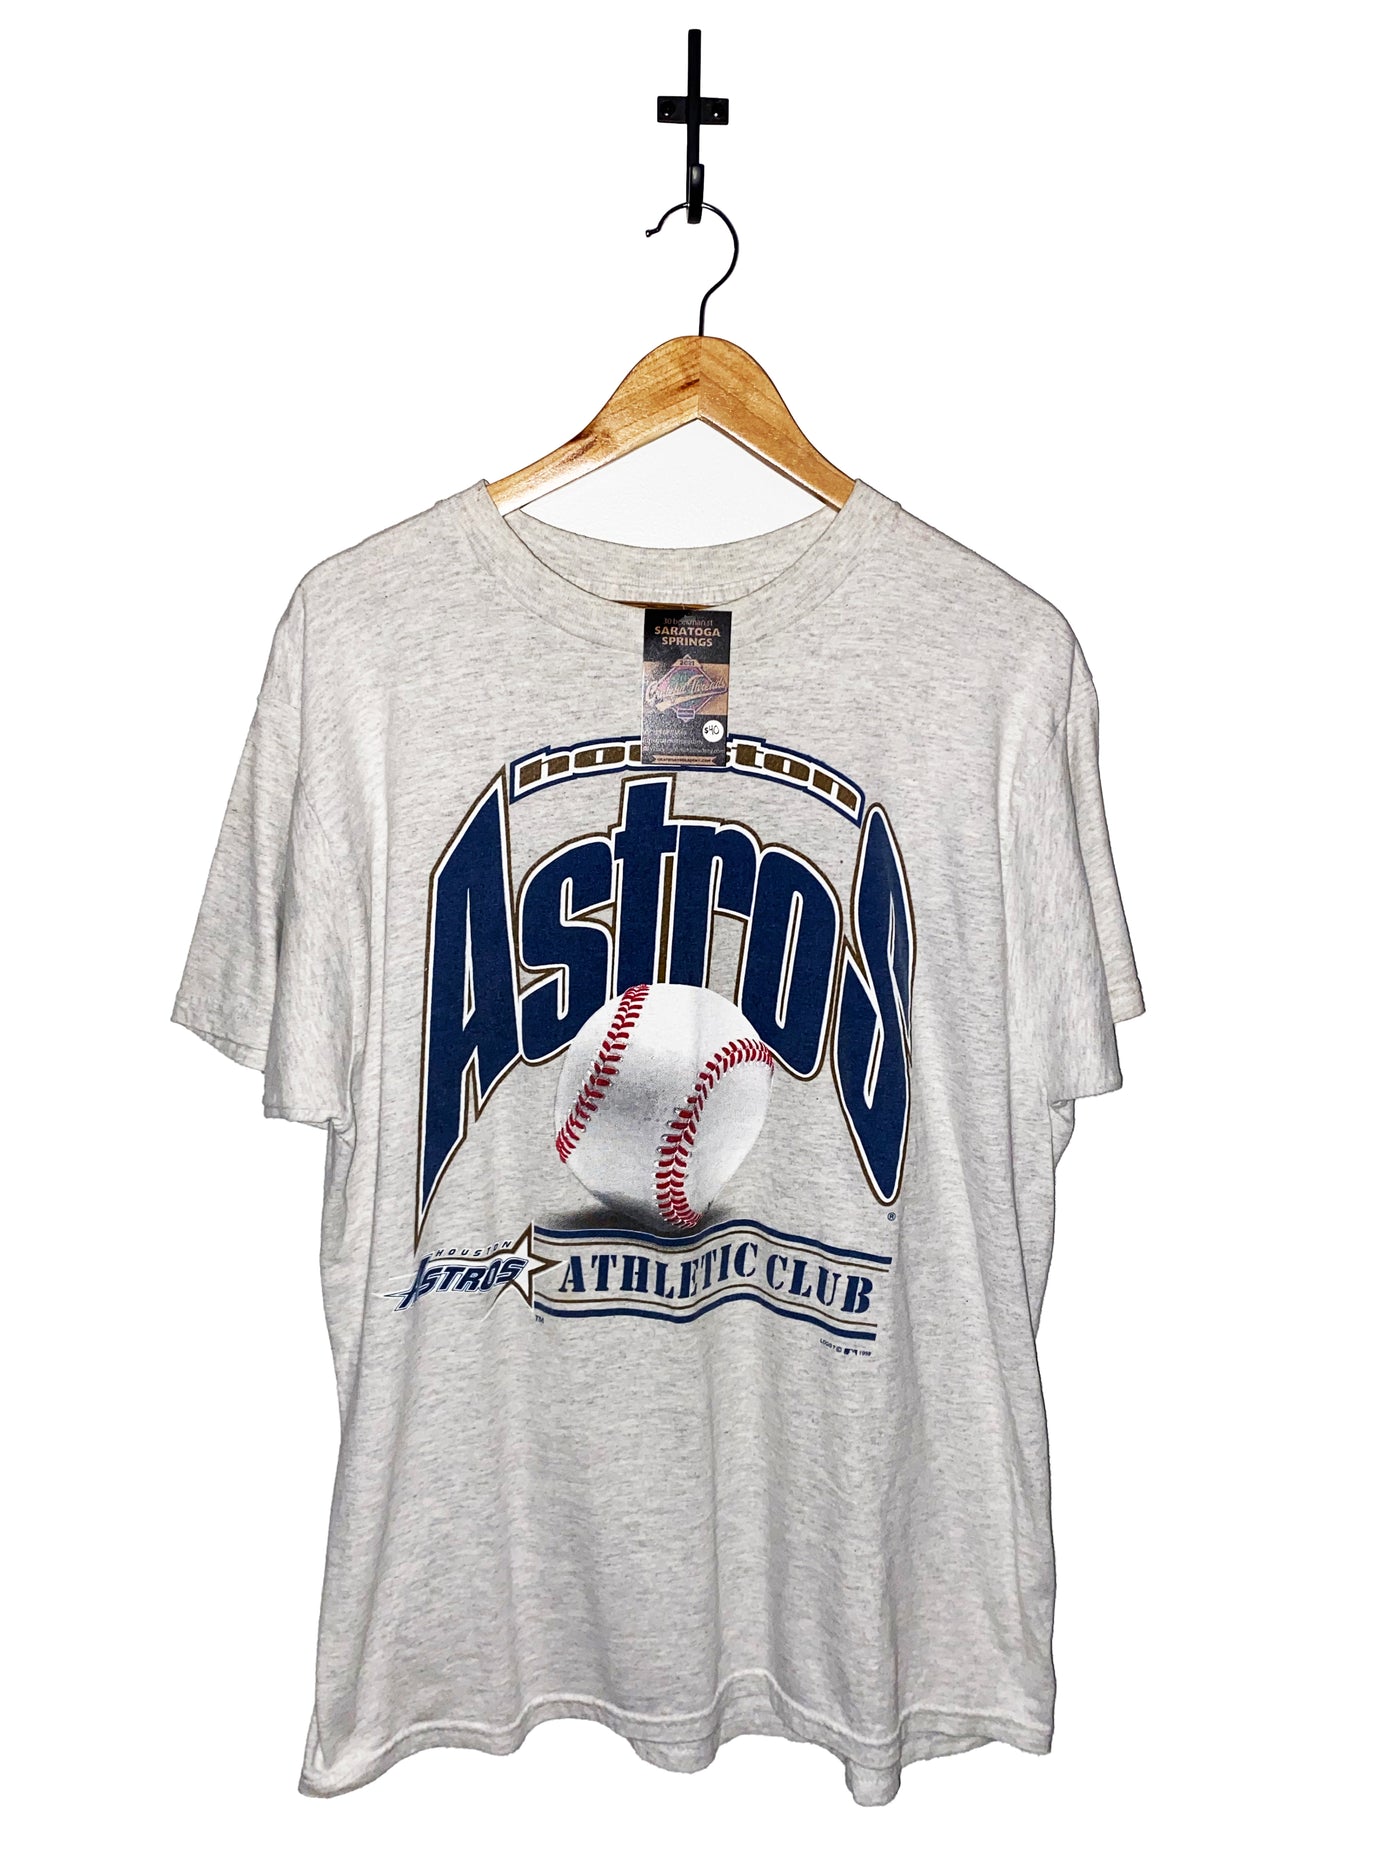 Vintage 1998 Houston Astro’s T-Shirt